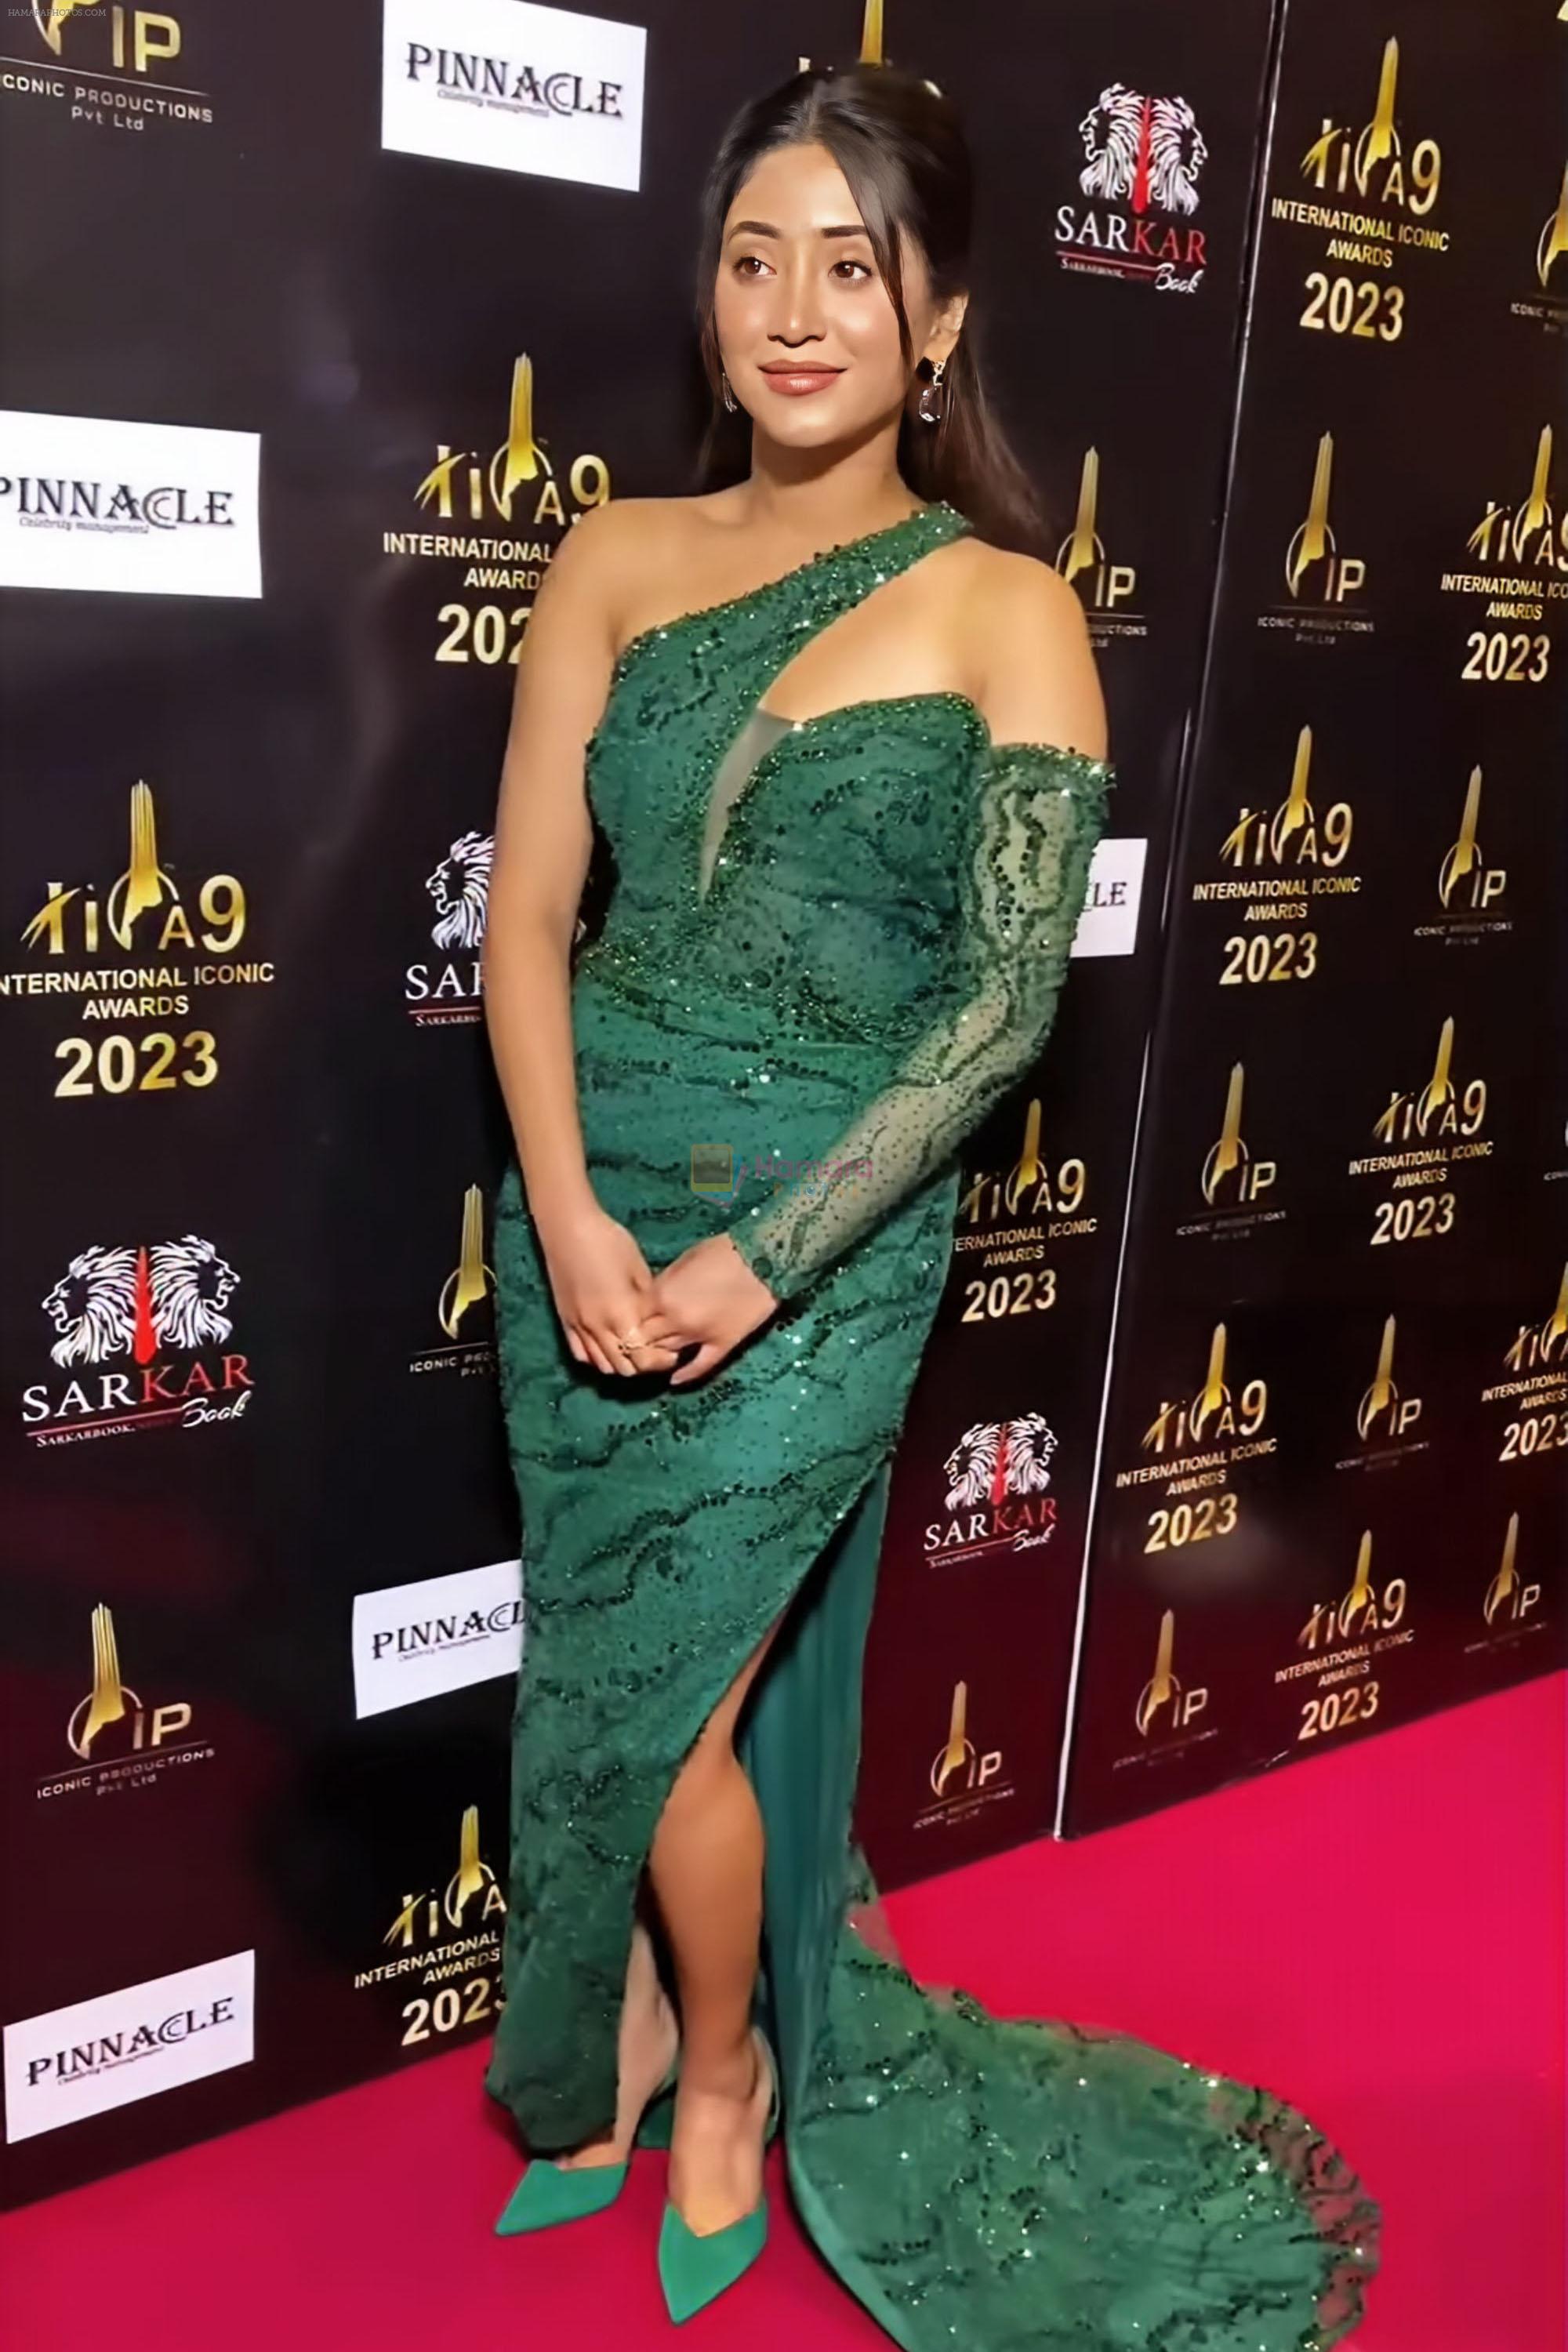 Shivangi Joshi at 2023 International Iconic Awards